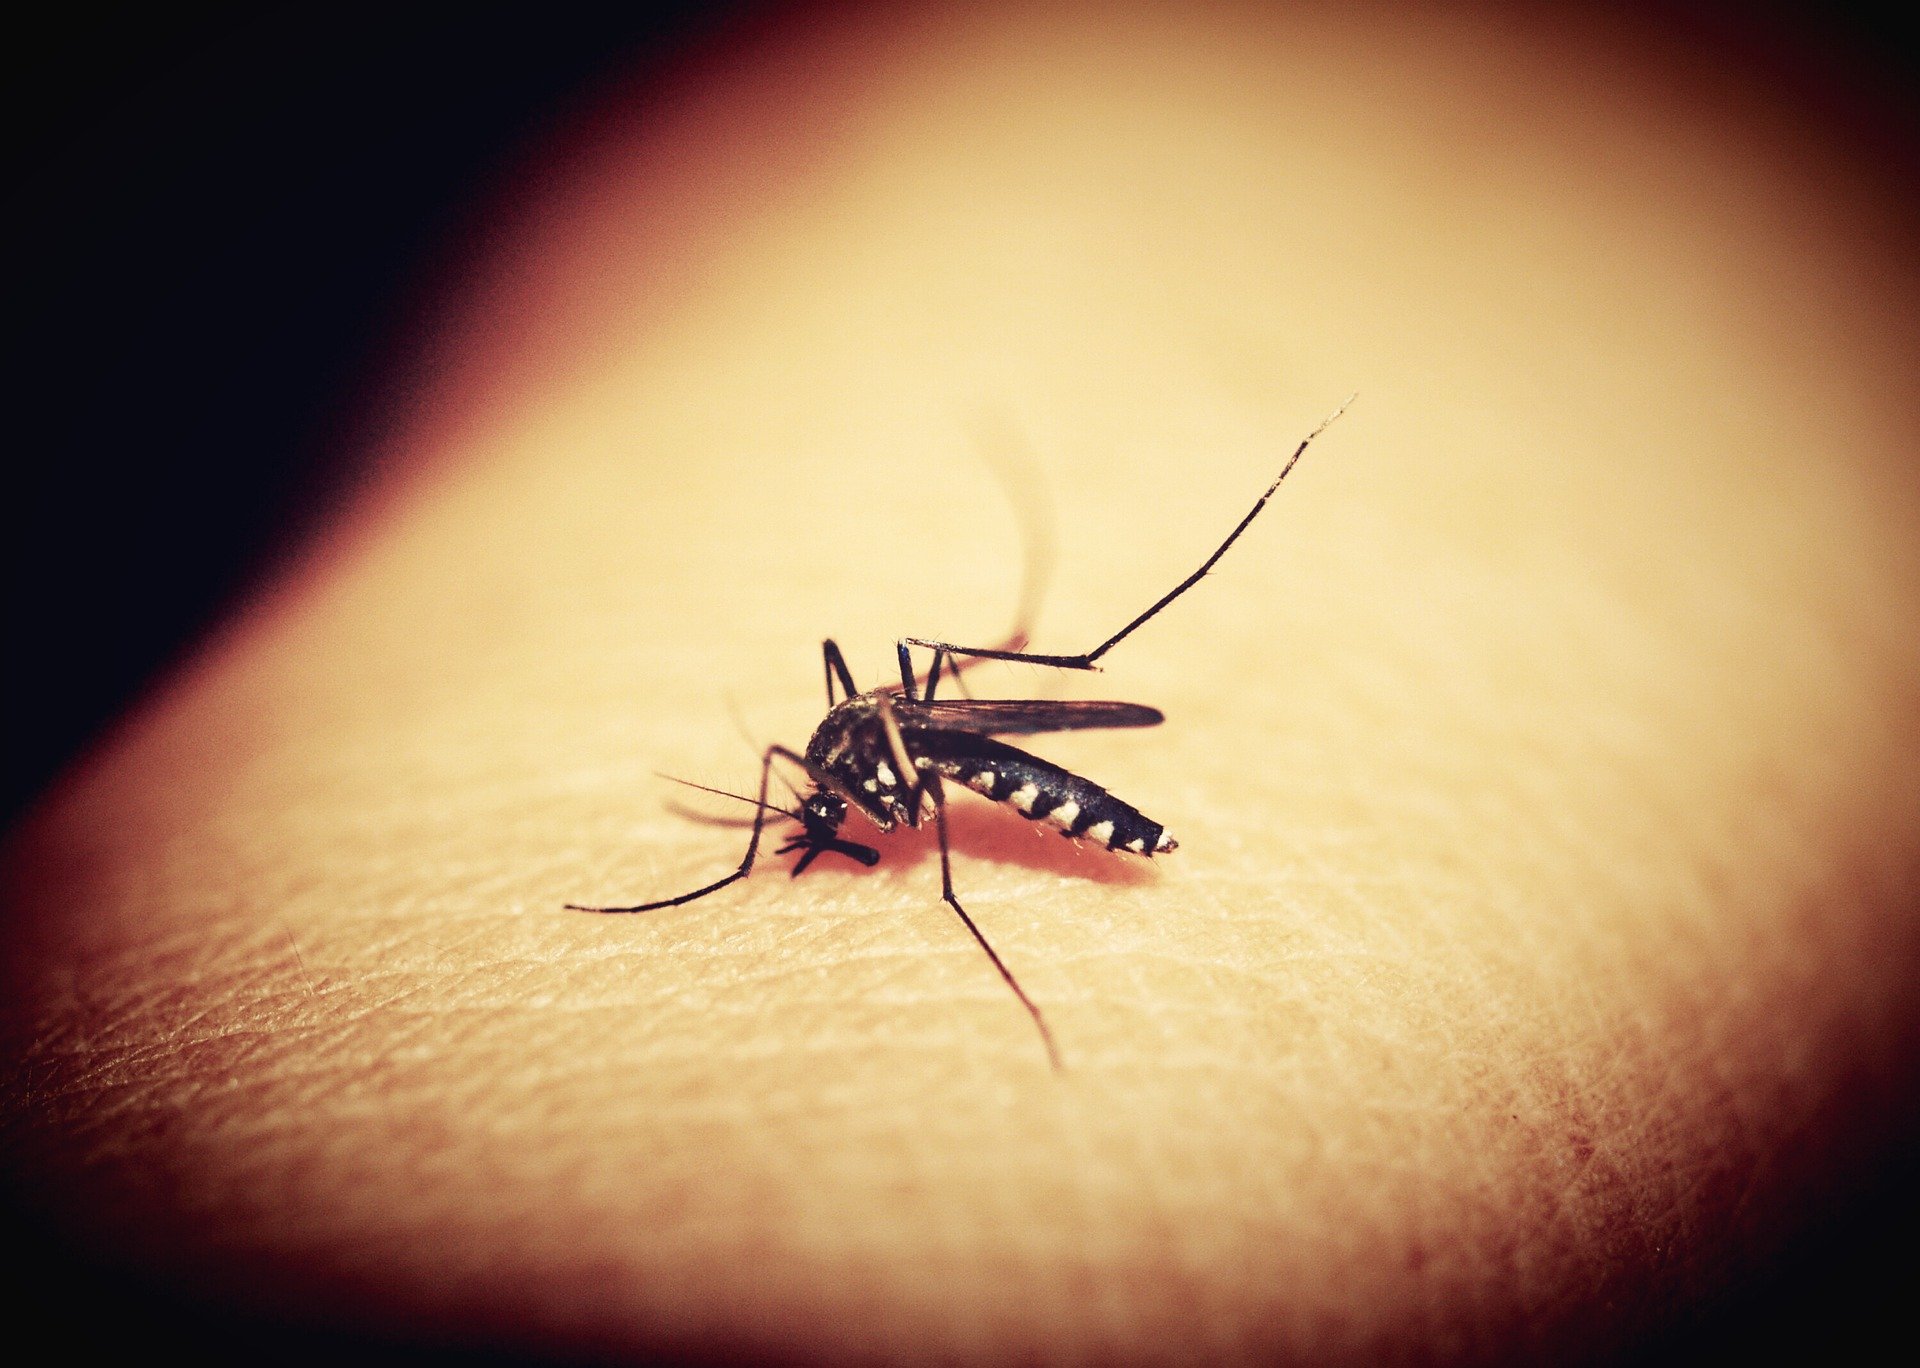 Nu scăpăm de virusul Zika! Ce boli grave ne pândesc vara aceasta